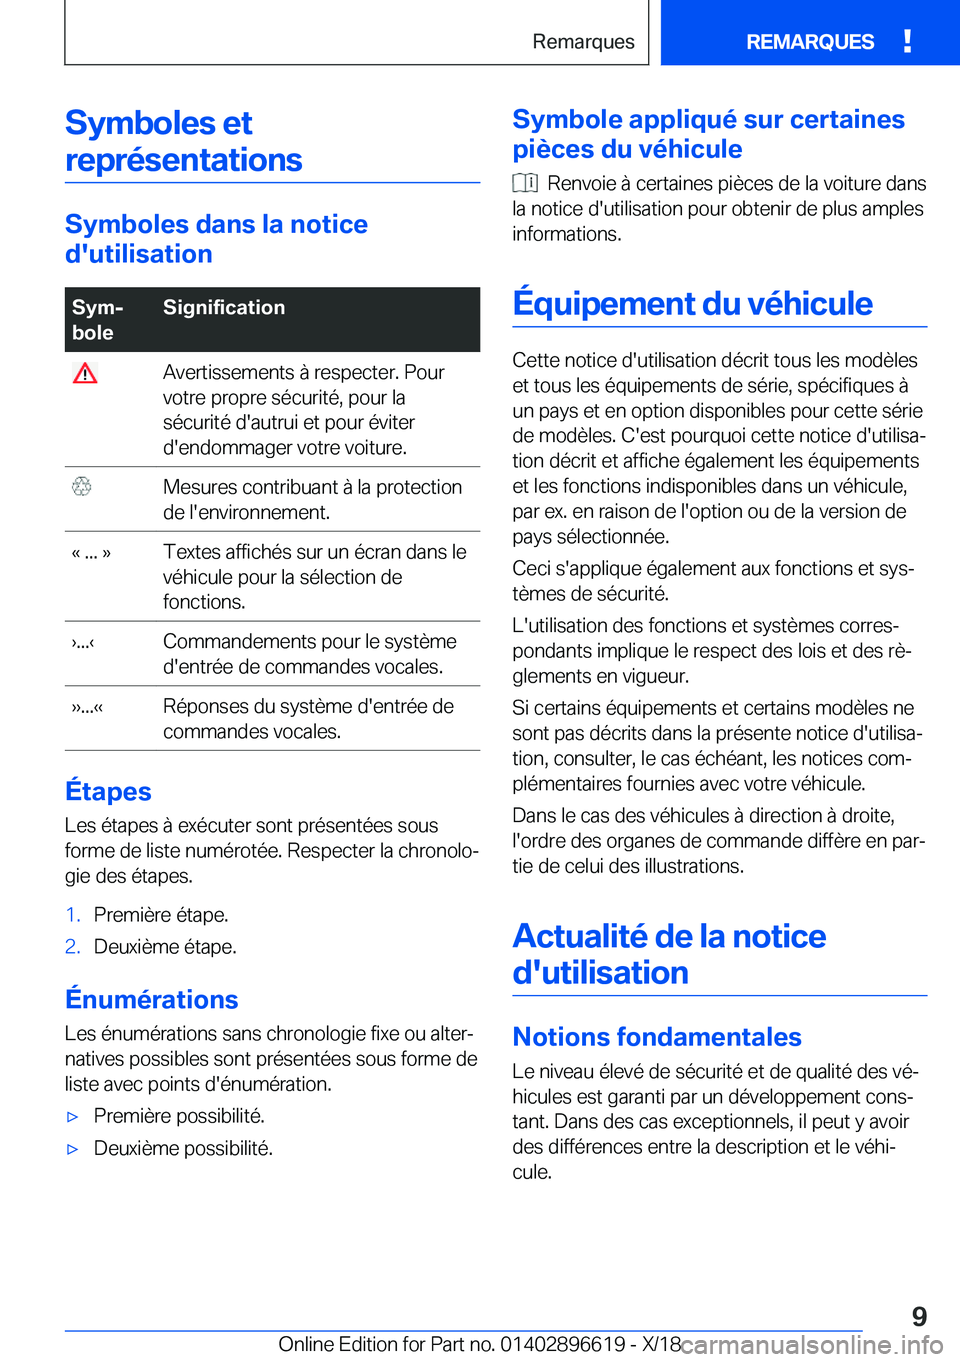 BMW M2 2019  Notices Demploi (in French) �S�y�m�b�o�l�e�s��e�t�r�e�p�r�é�s�e�n�t�a�t�i�o�n�s
�S�y�m�b�o�l�e�s��d�a�n�s��l�a��n�o�t�i�c�e
�d�'�u�t�i�l�i�s�a�t�i�o�n
�S�y�mj
�b�o�l�e�S�i�g�n�i�f�i�c�a�t�i�o�n��A�v�e�r�t�i�s�s�e�m�e�